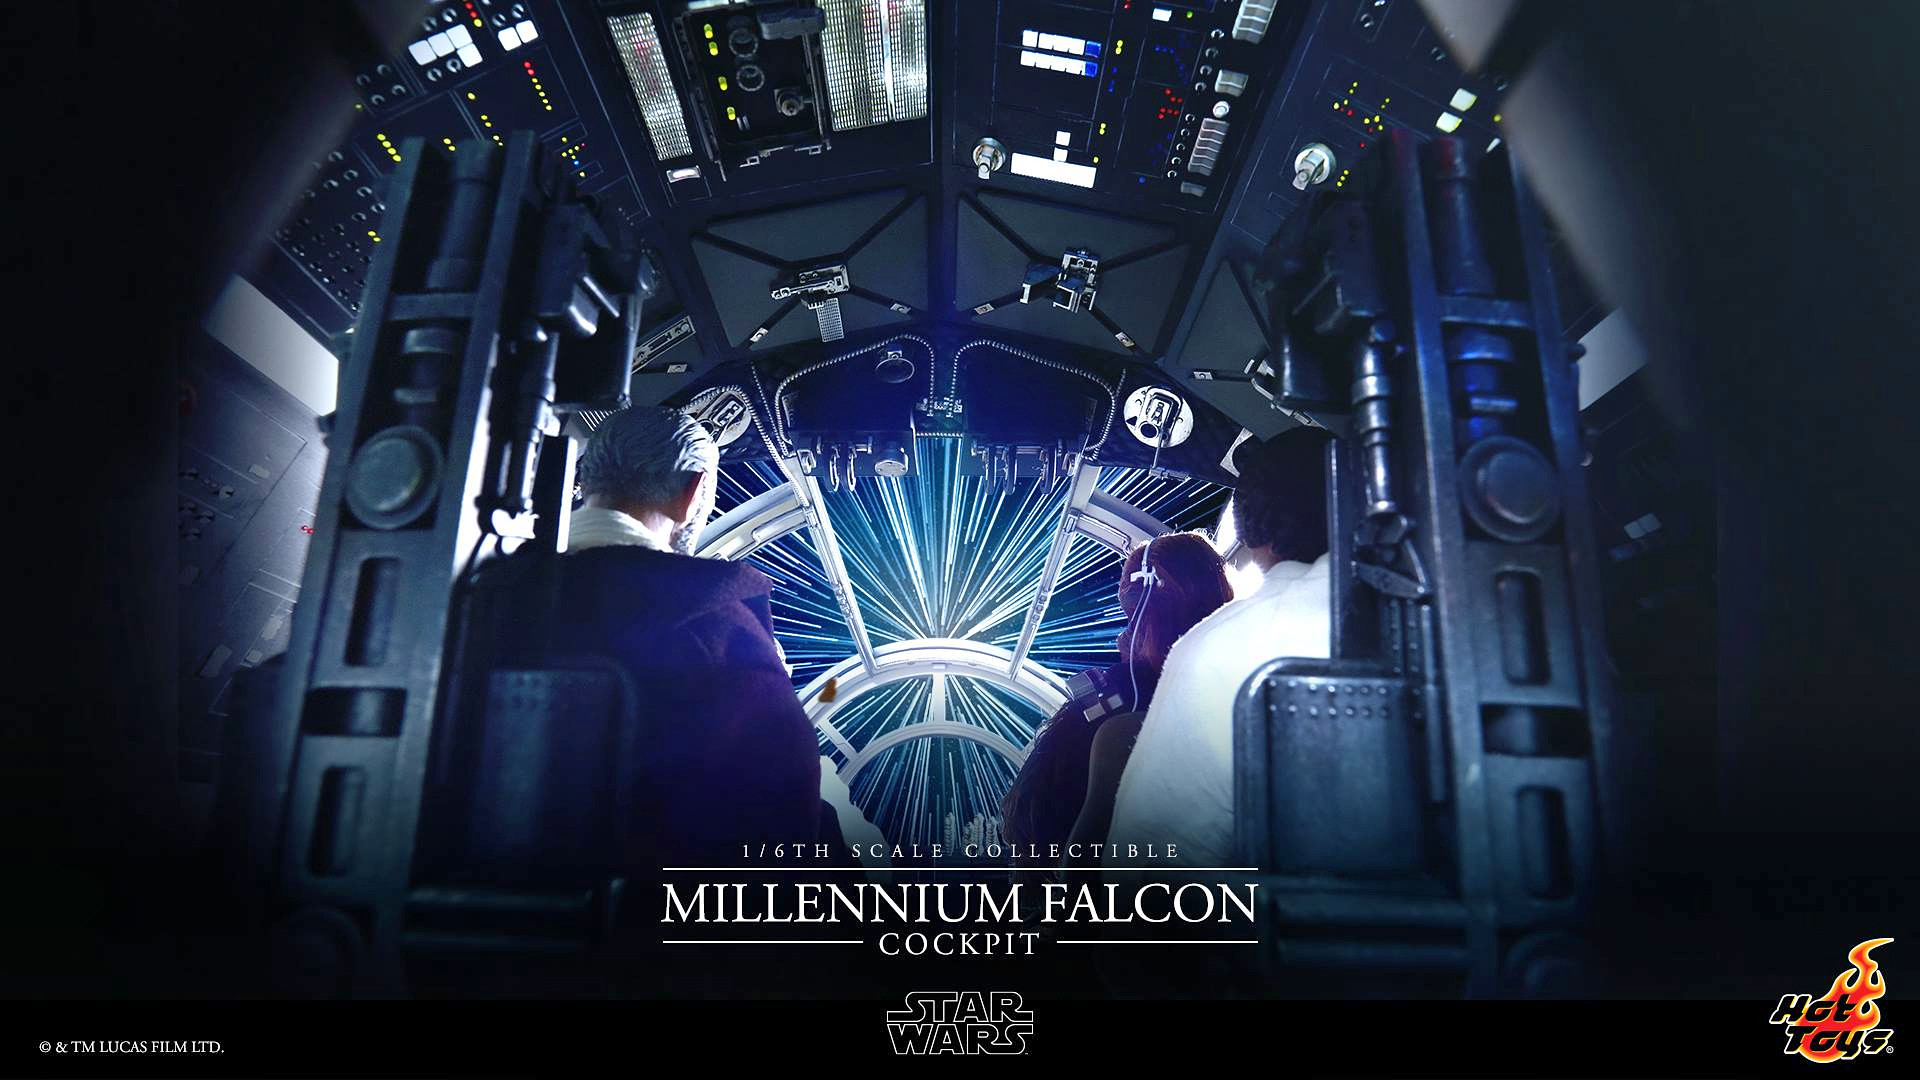 Millenium Falcon Cockpit Wallpaper Image